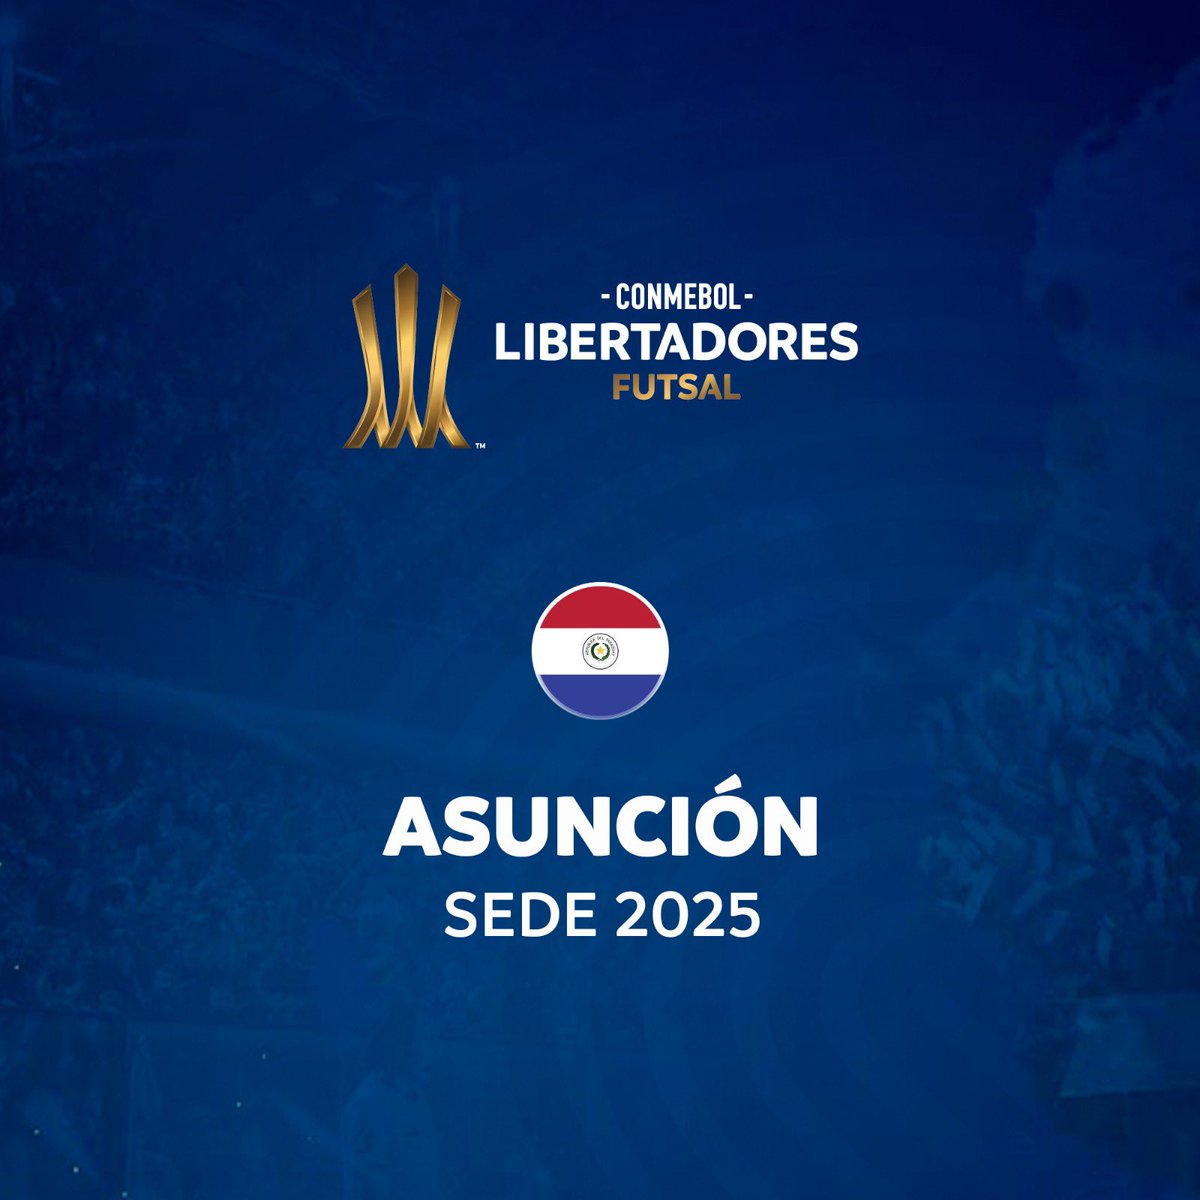 ¡Asunción será sede de la @CONMEBOL #LibertadoresFS 2025! Los mejores clubes del continente se citarán en Paraguay el año próximo 🏆